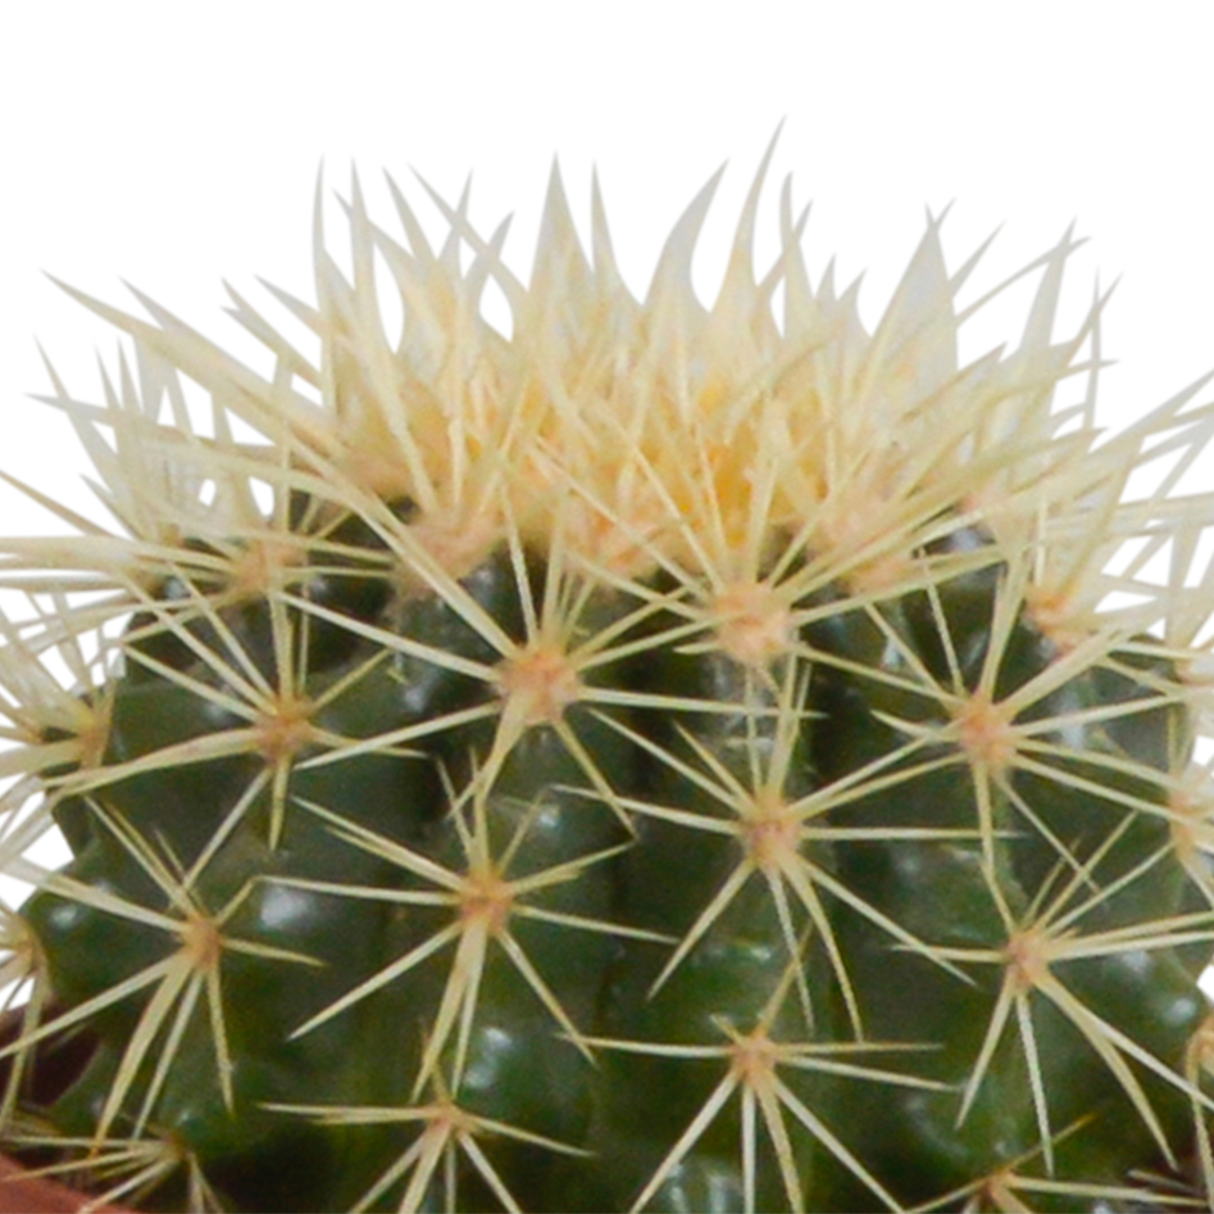 Coffret cactus et ses caches-pots terracotta - Lot de 3 plantes, h23cm